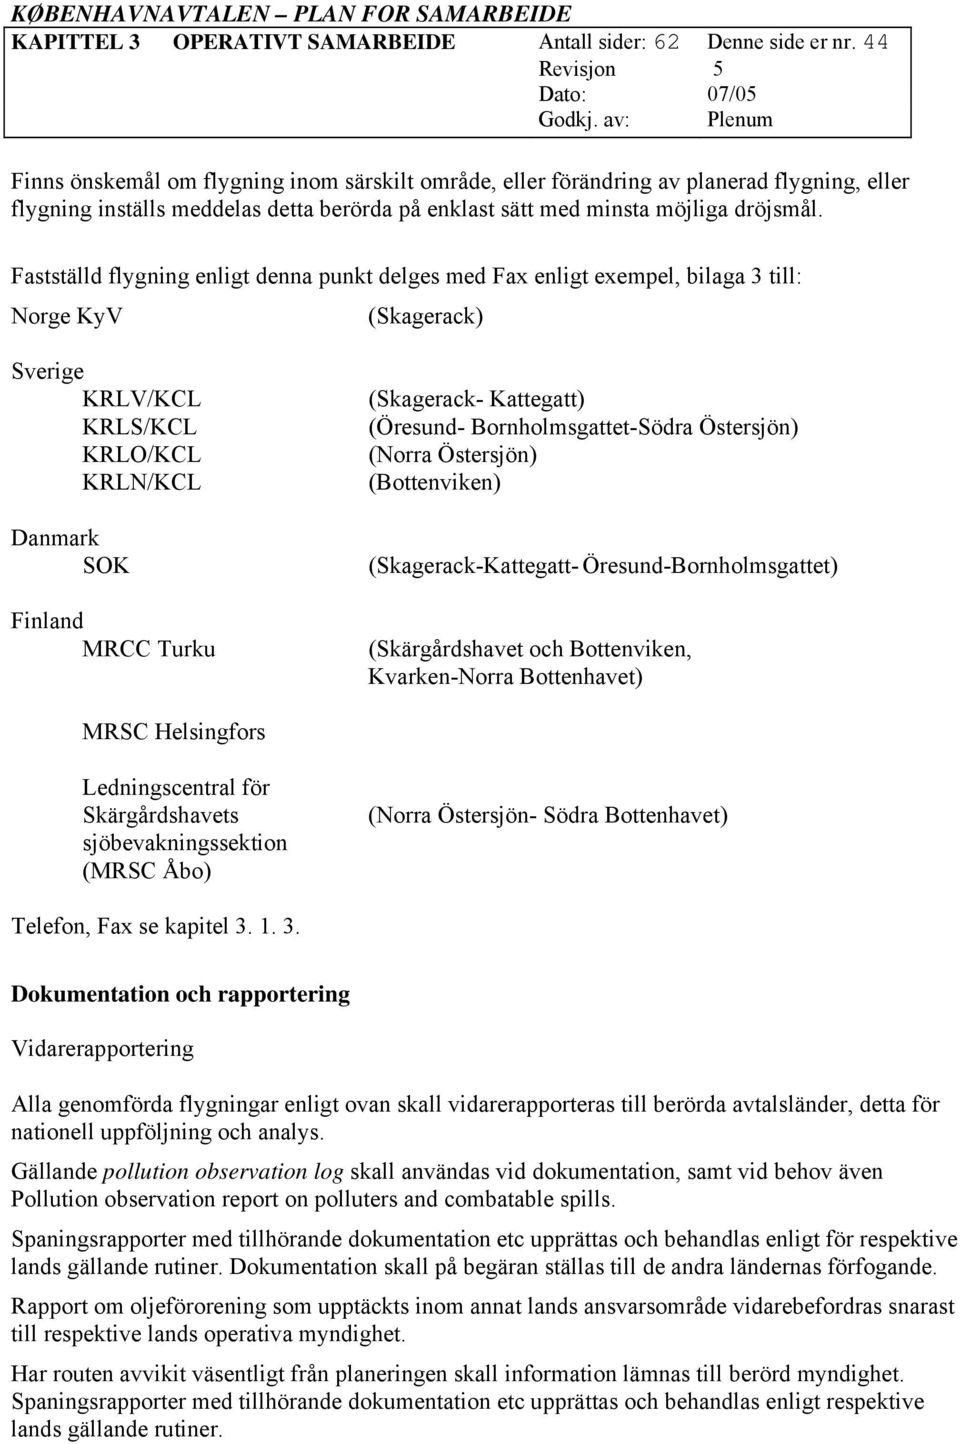 Fastställd flygning enligt denna punkt delges med Fax enligt exempel, bilaga 3 till: Norge KyV (Skagerack) Sverige KRLV/KCL KRLS/KCL KRLO/KCL KRLN/KCL Danmark SOK Finland MRCC Turku (Skagerack-